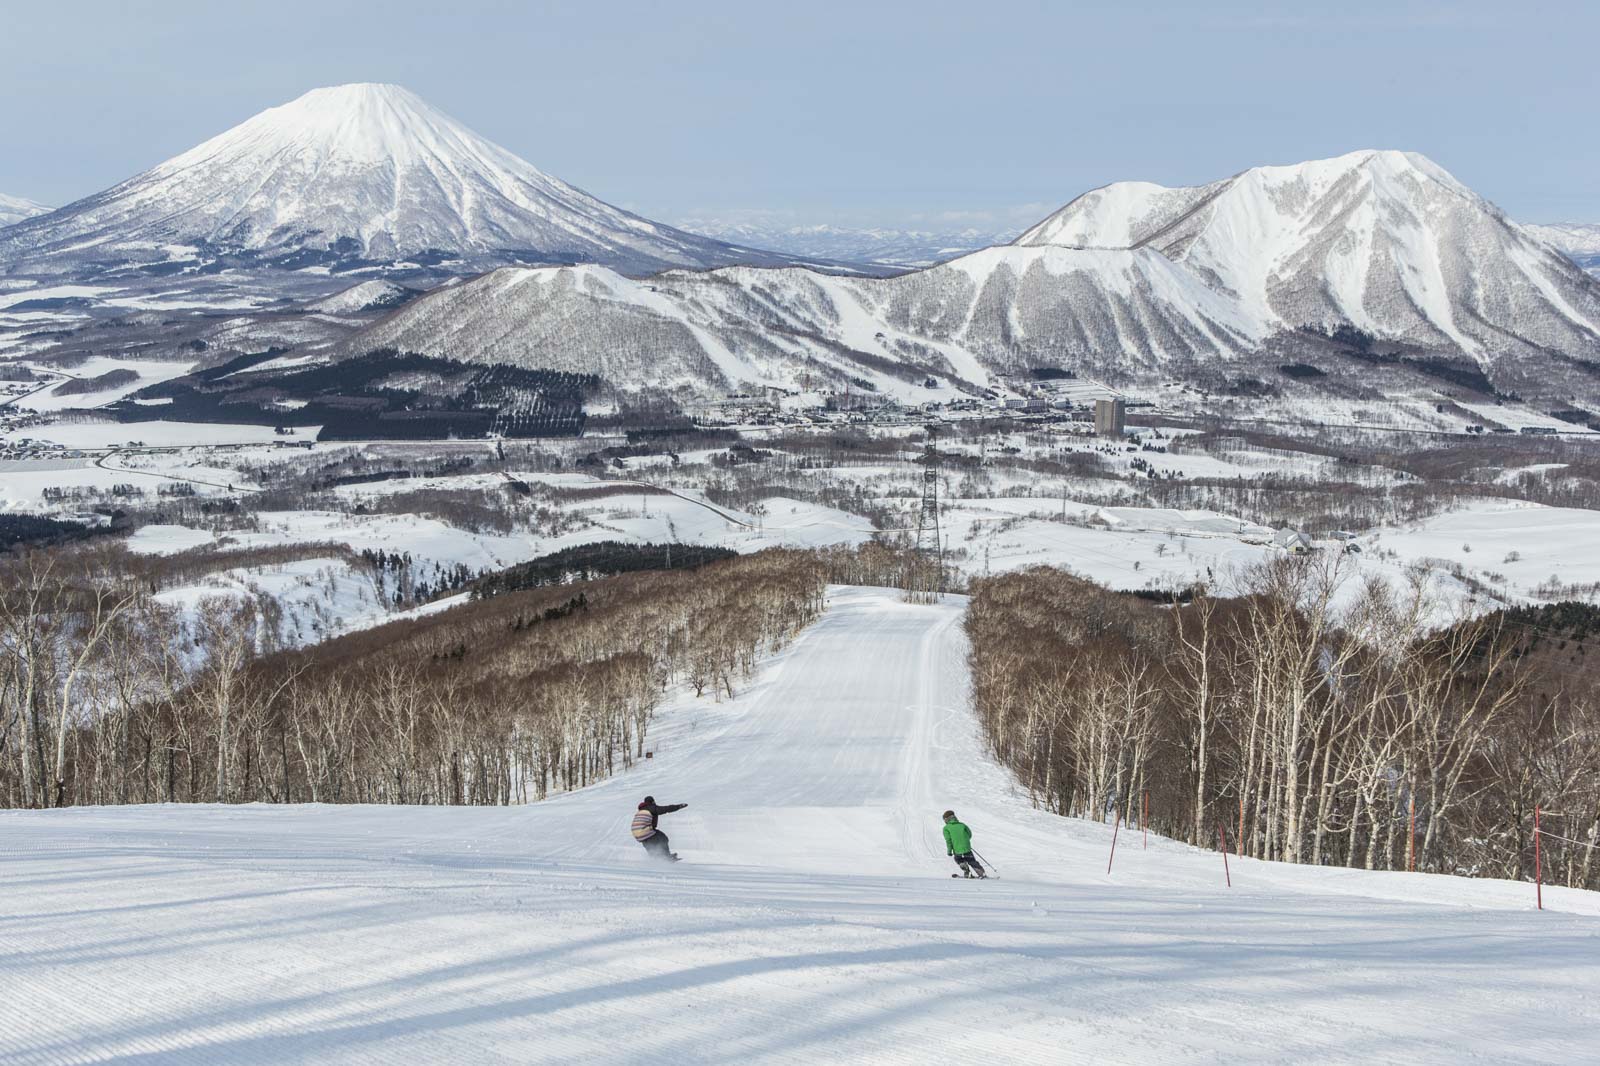 Winter sports Hokkaido, Japan